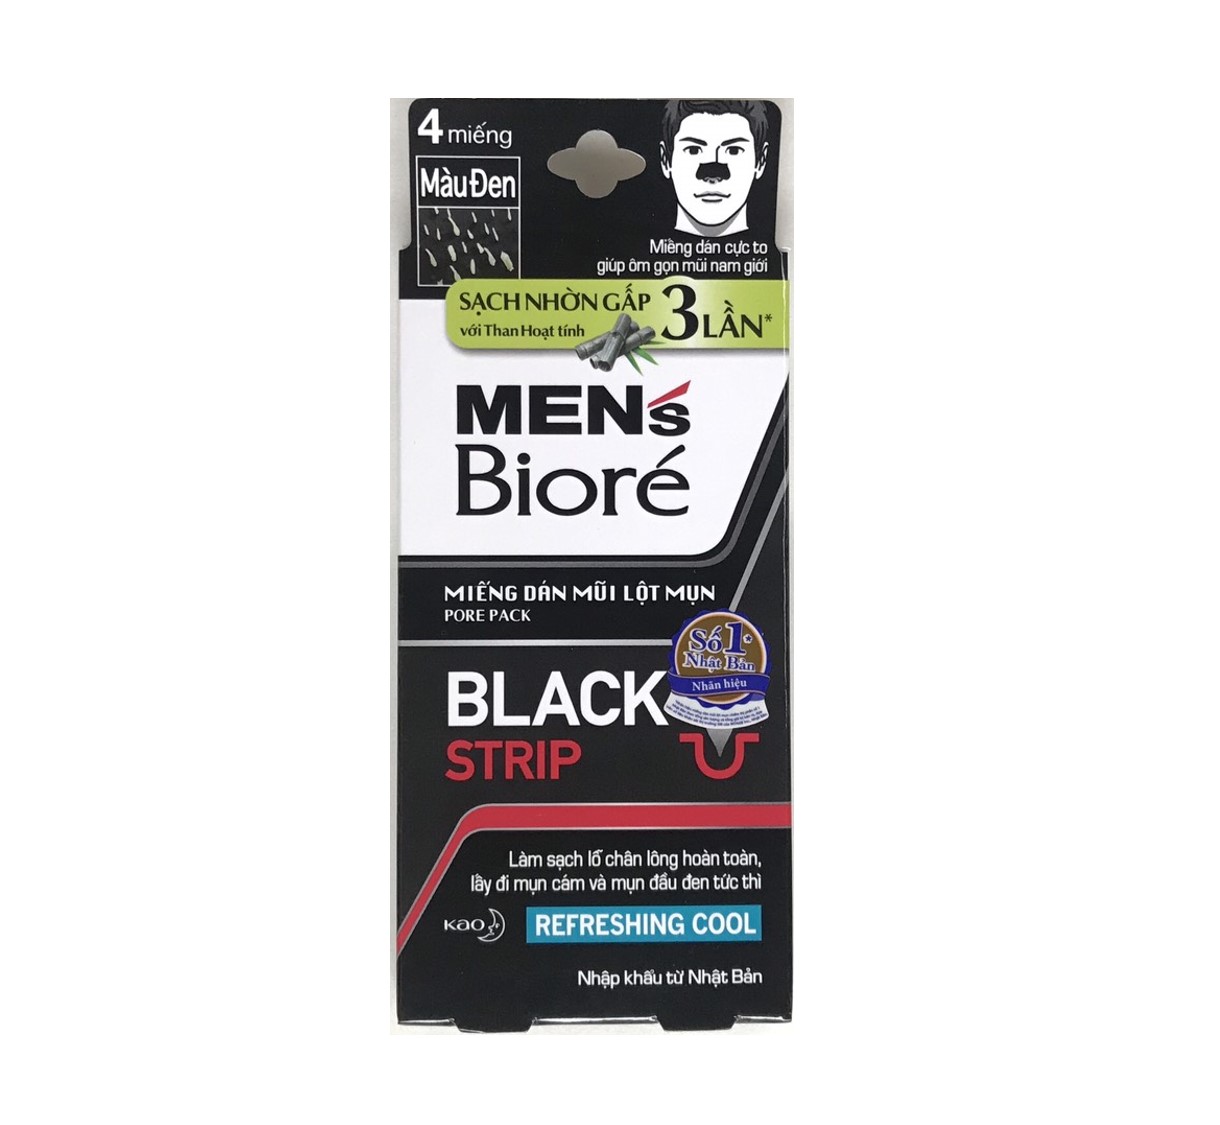 Combo 5 Hộp Miếng Dán Mũi Lột Mụn Than Hoạt Tính Men's Biore Pore Pack Black Strip (1 hộp/4 miếng x 5)